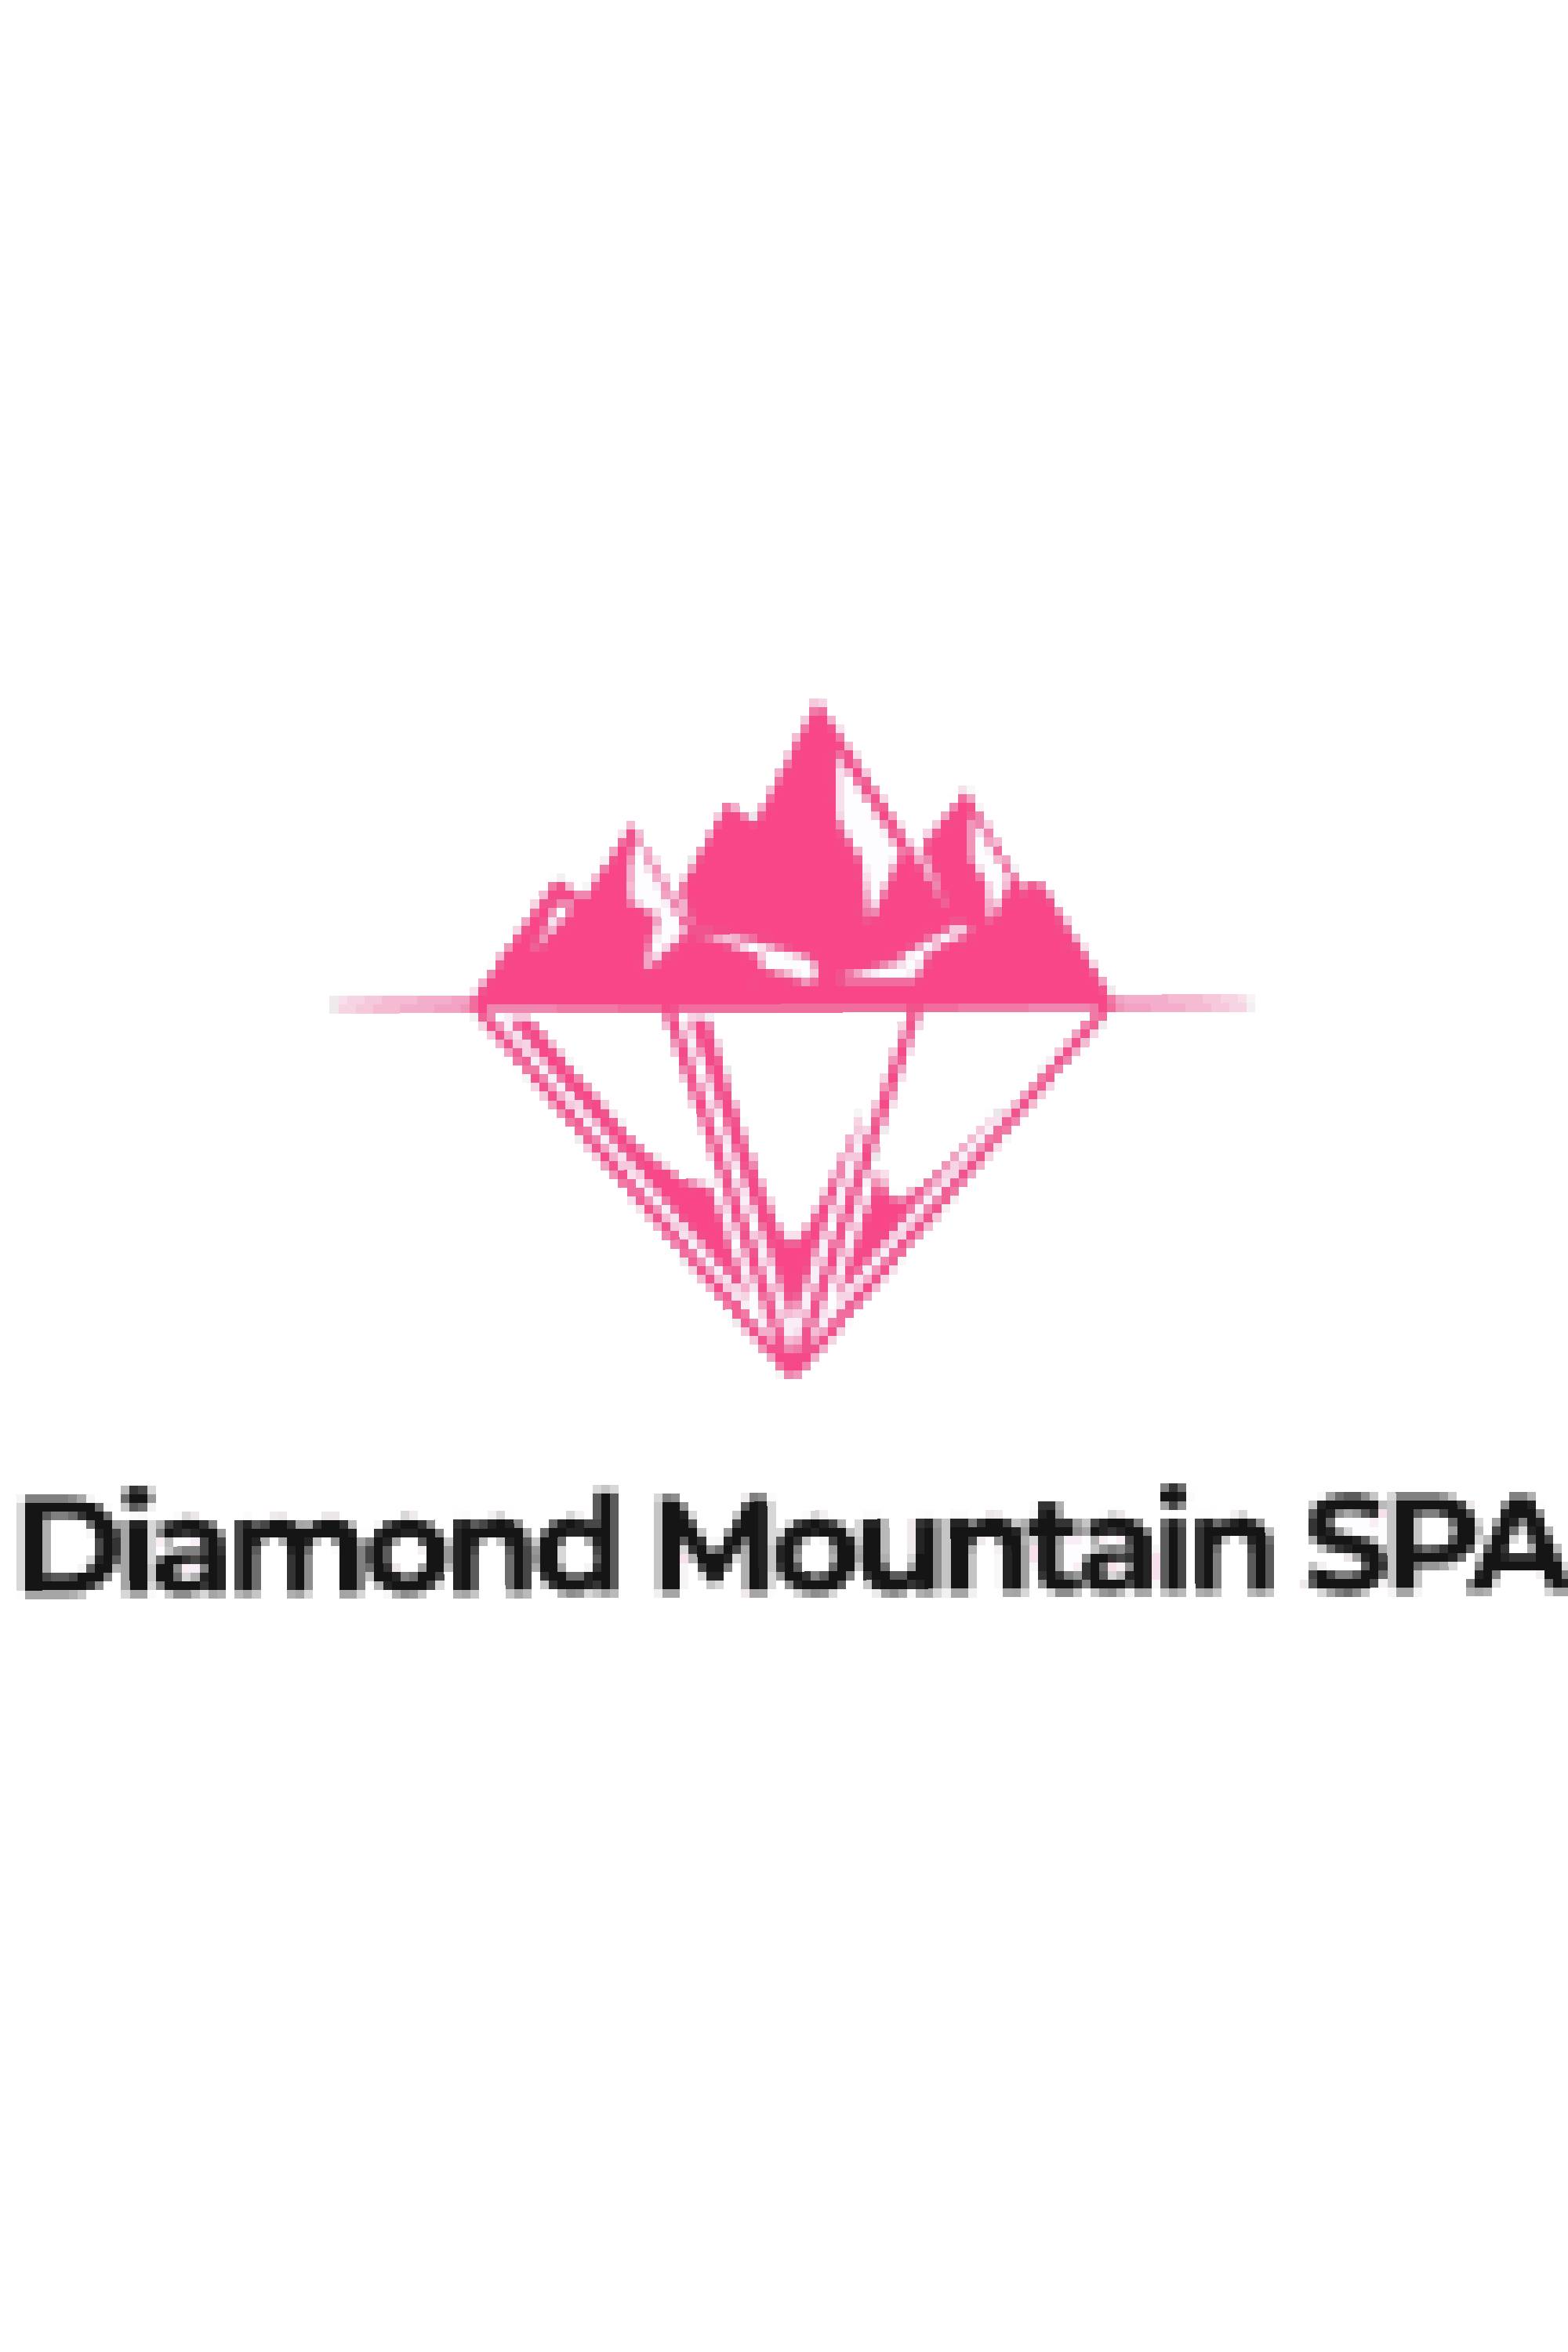 Diamond Mountain Spa